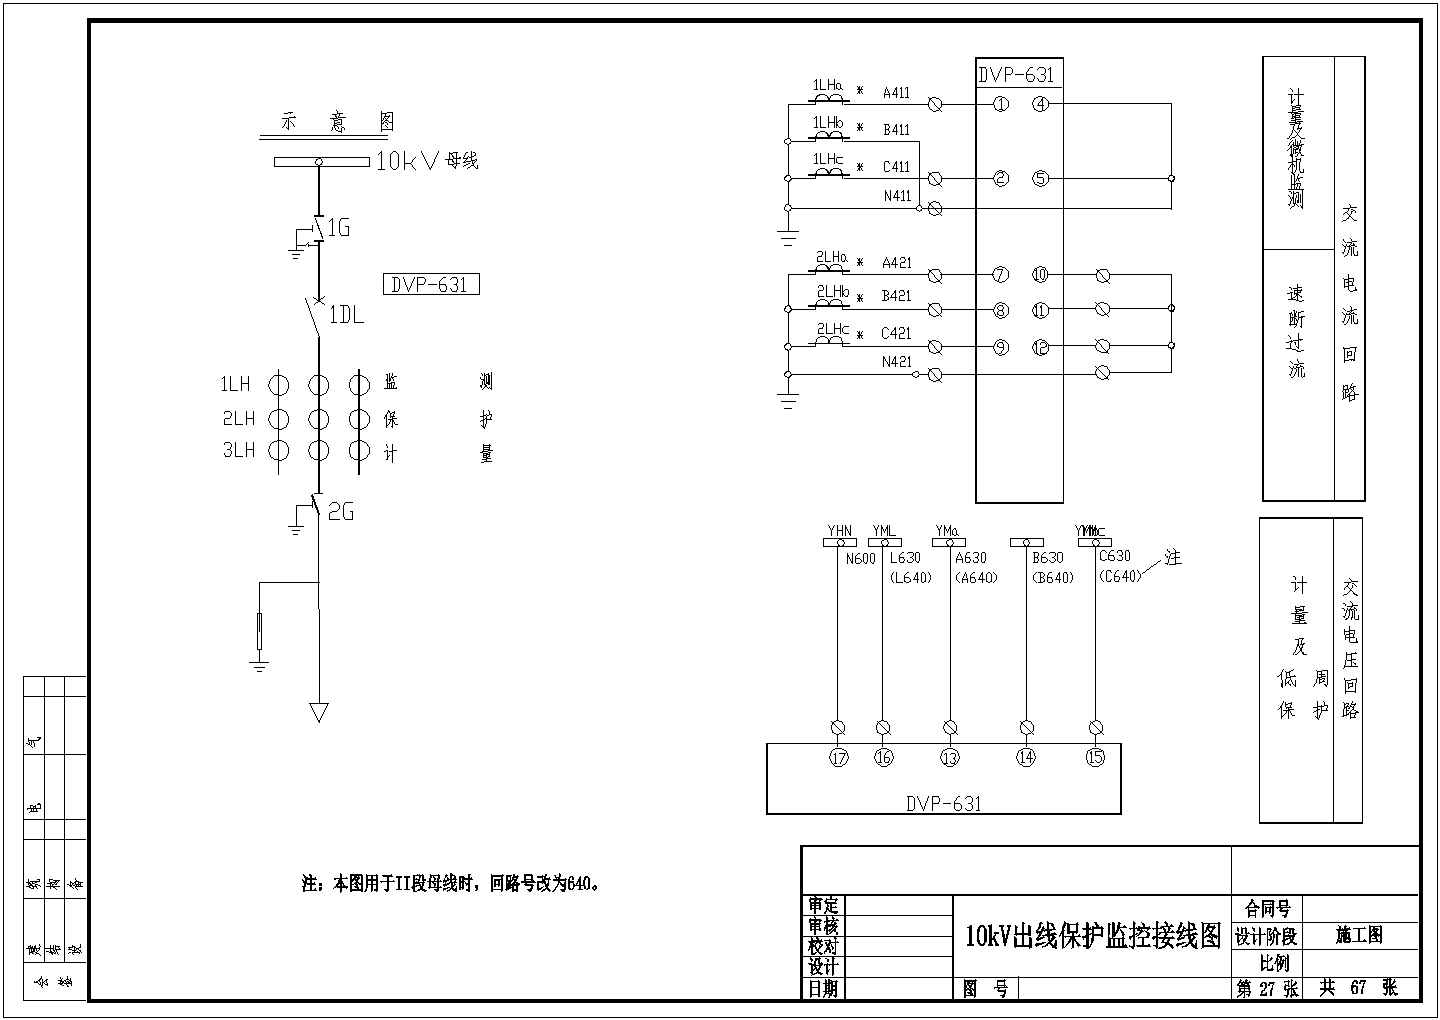 江西110kV变电站全套综合自动化系统图纸